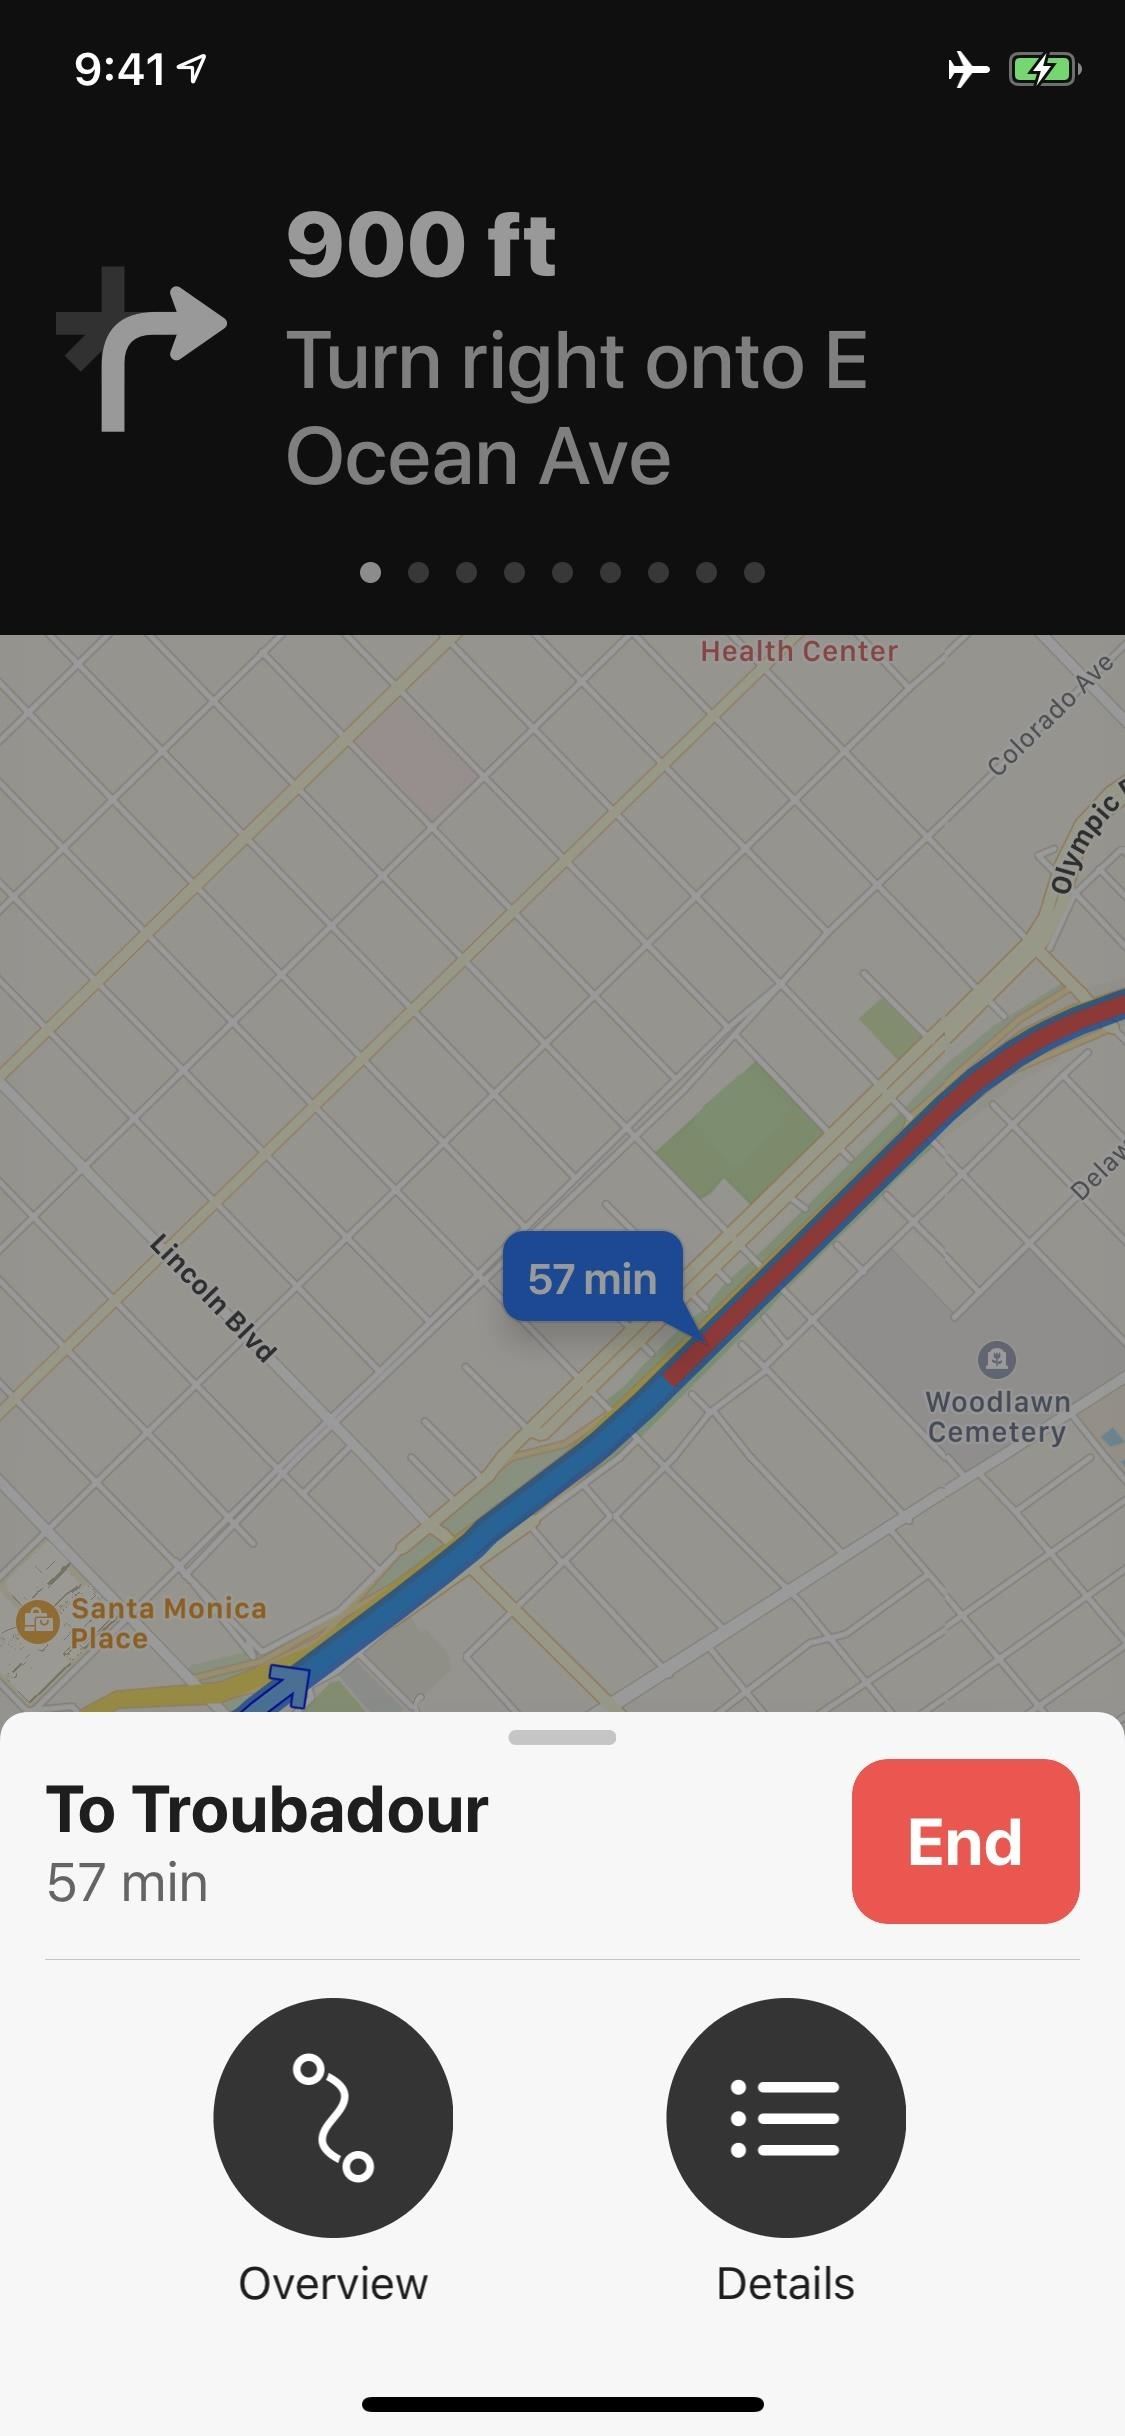 Với Apple Maps offline, bạn có thể dễ dàng tìm kiếm địa điểm mà không cần kết nối internet. Hướng dẫn sử dụng Apple Maps offline giúp bạn tránh khỏi việc phải tốn chi phí cho gói data, đồng thời tăng cường trải nghiệm khám phá đầy thú vị.